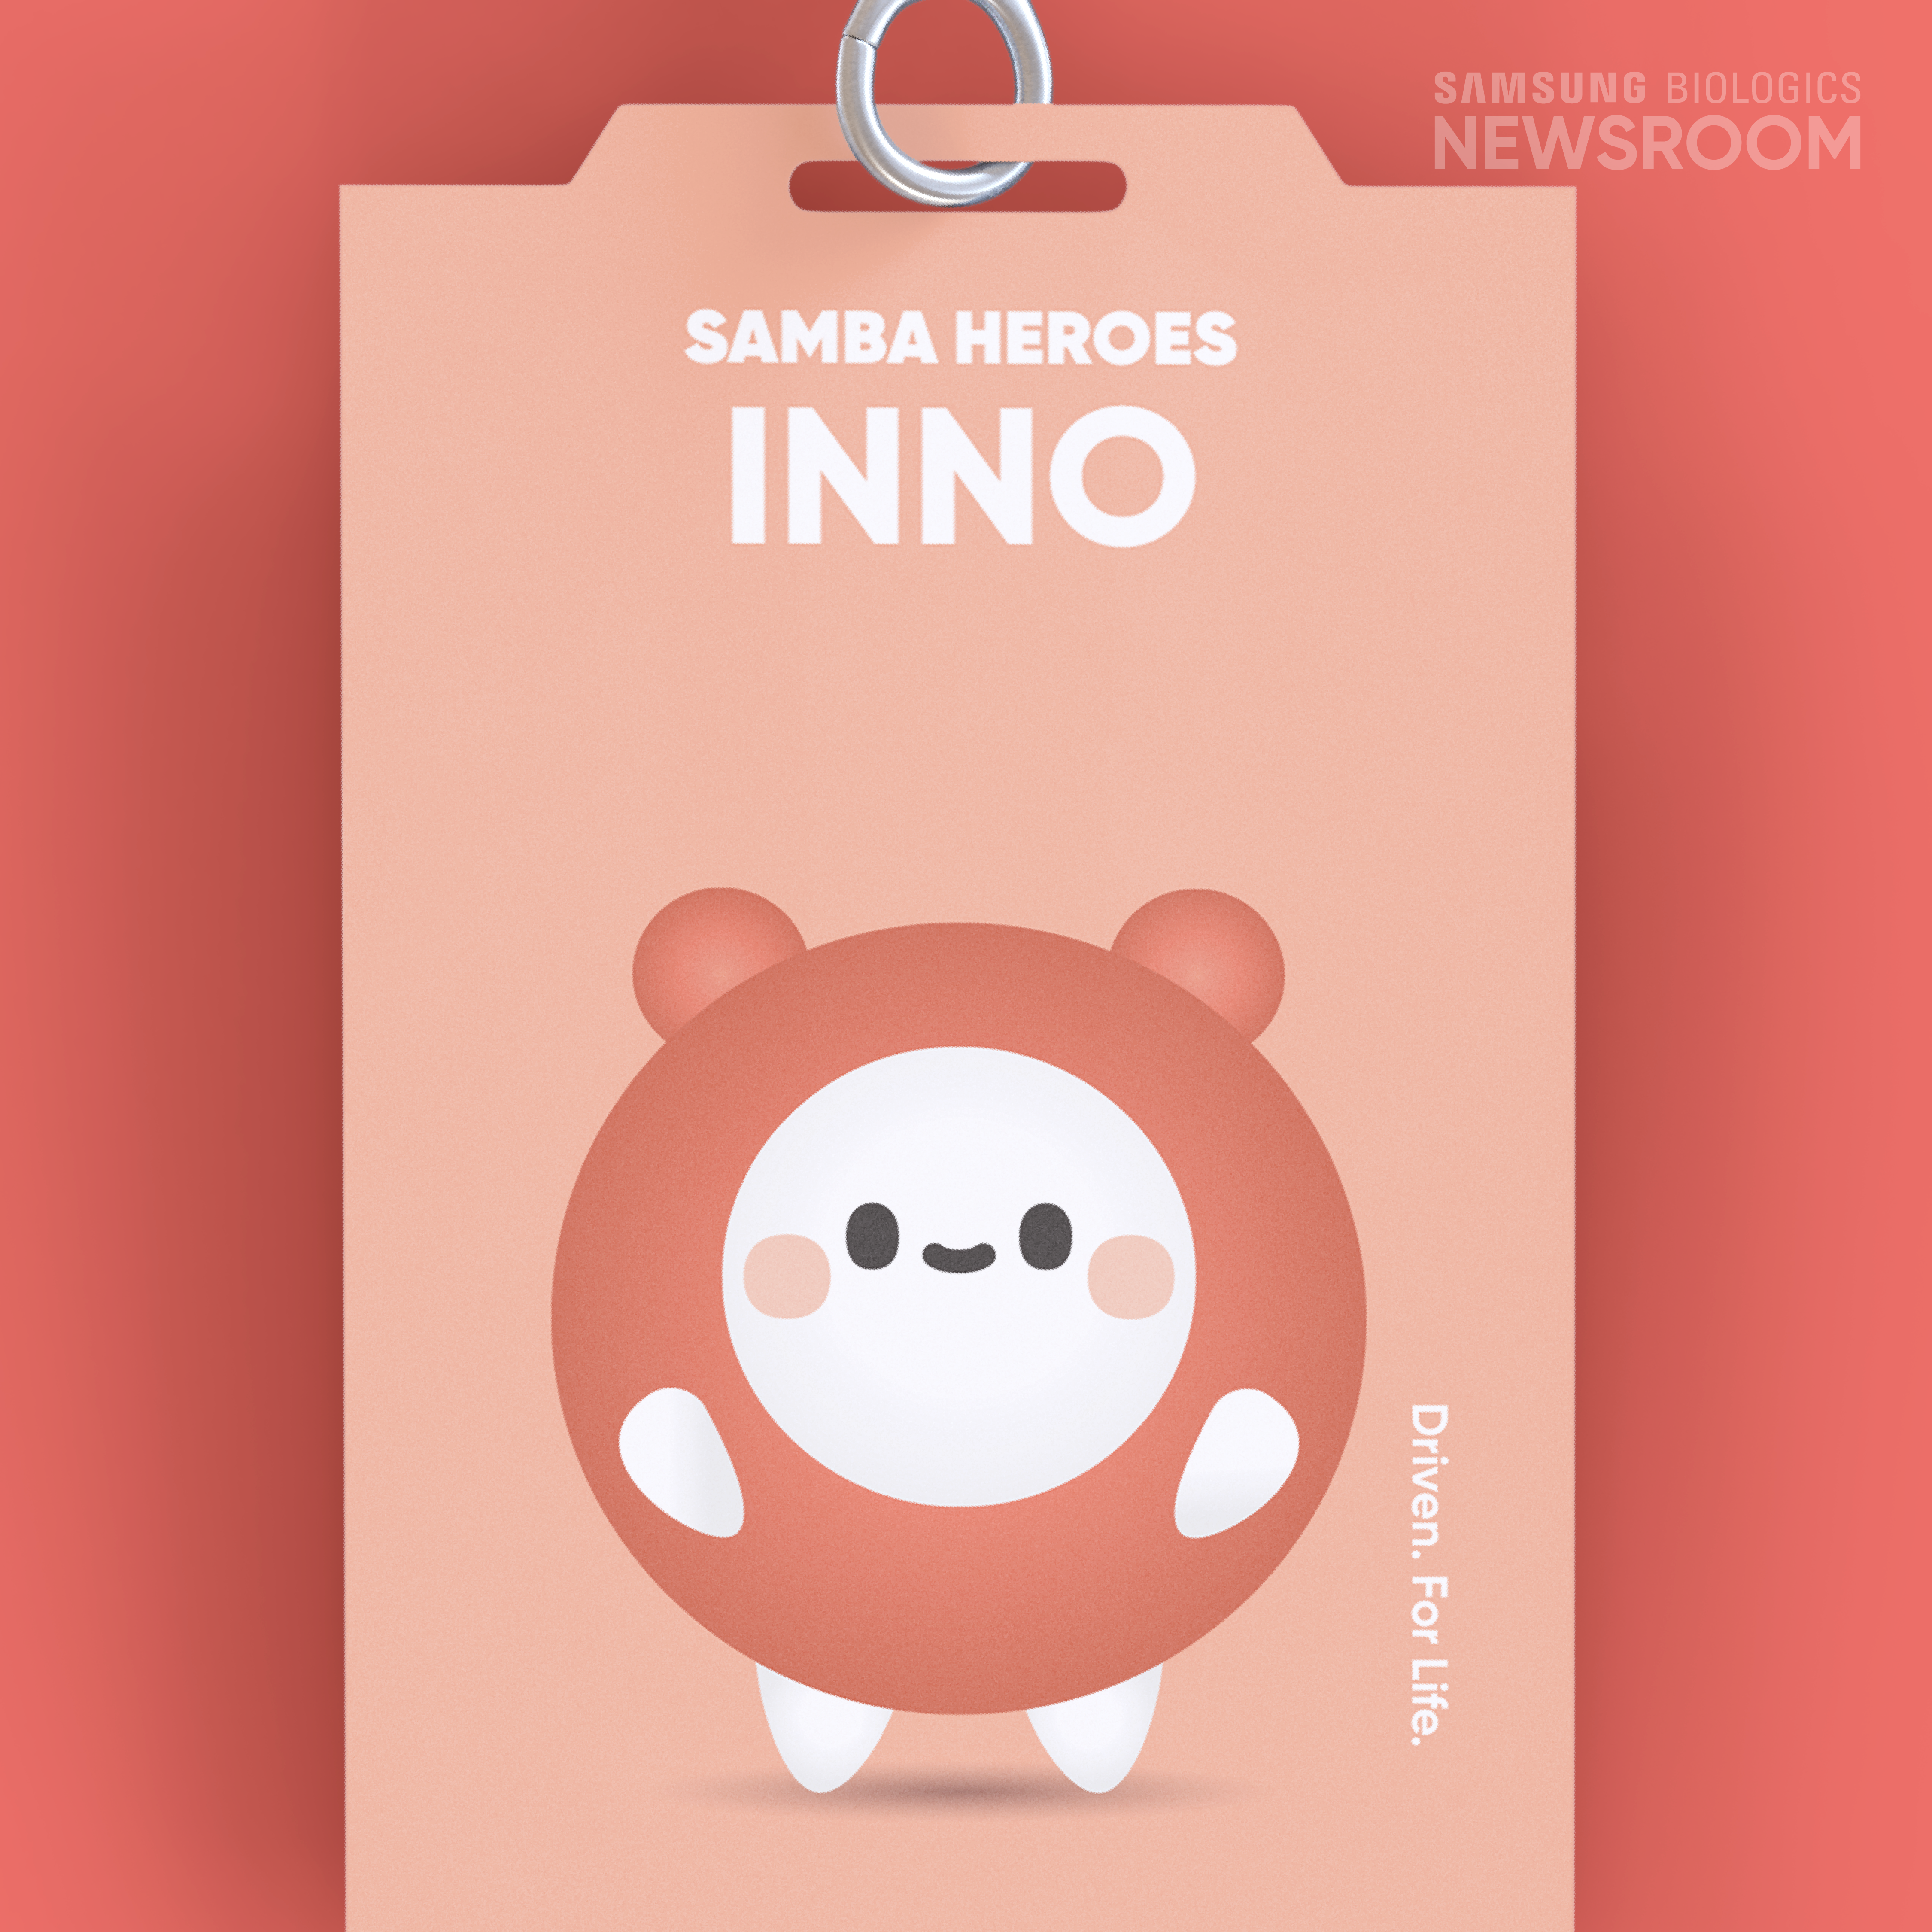 혁신의 아이콘, 귀염뽀짝 이노(INNO)